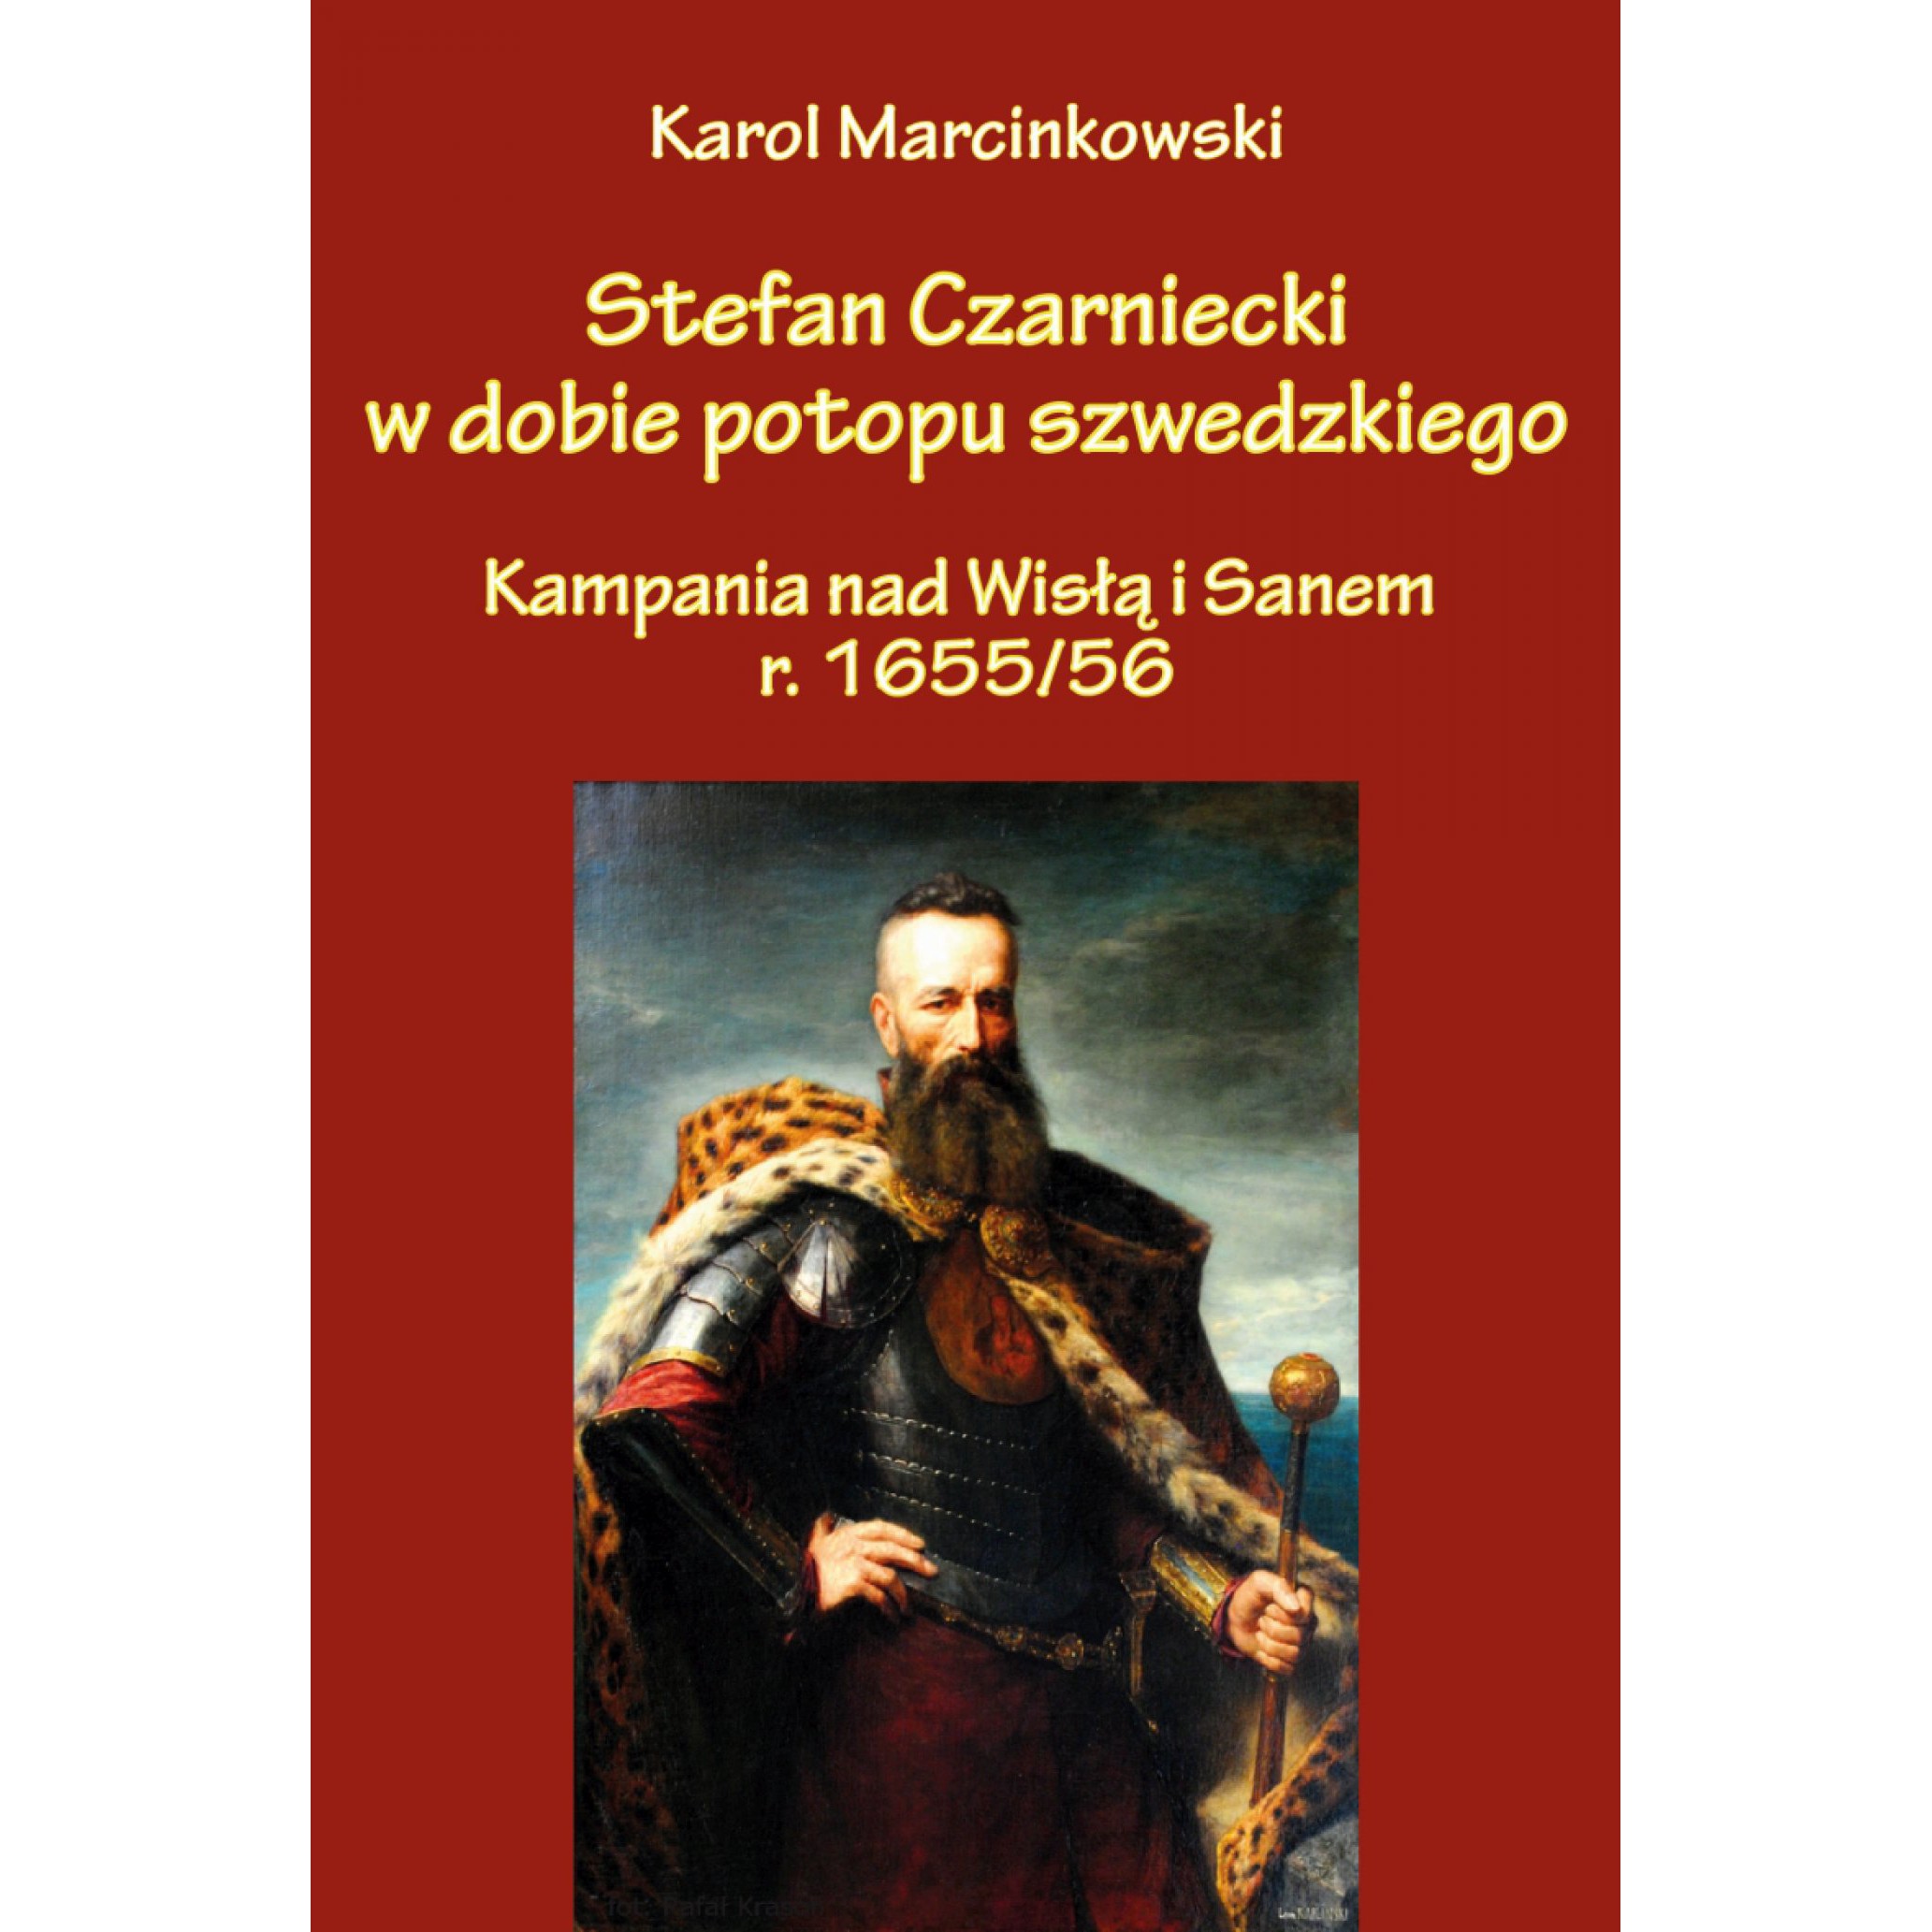 Stefan Czarniecki w dobie potopu szwedzkiego (kampania nad Wisłą i Sanem r. 1655/56) - Outlet